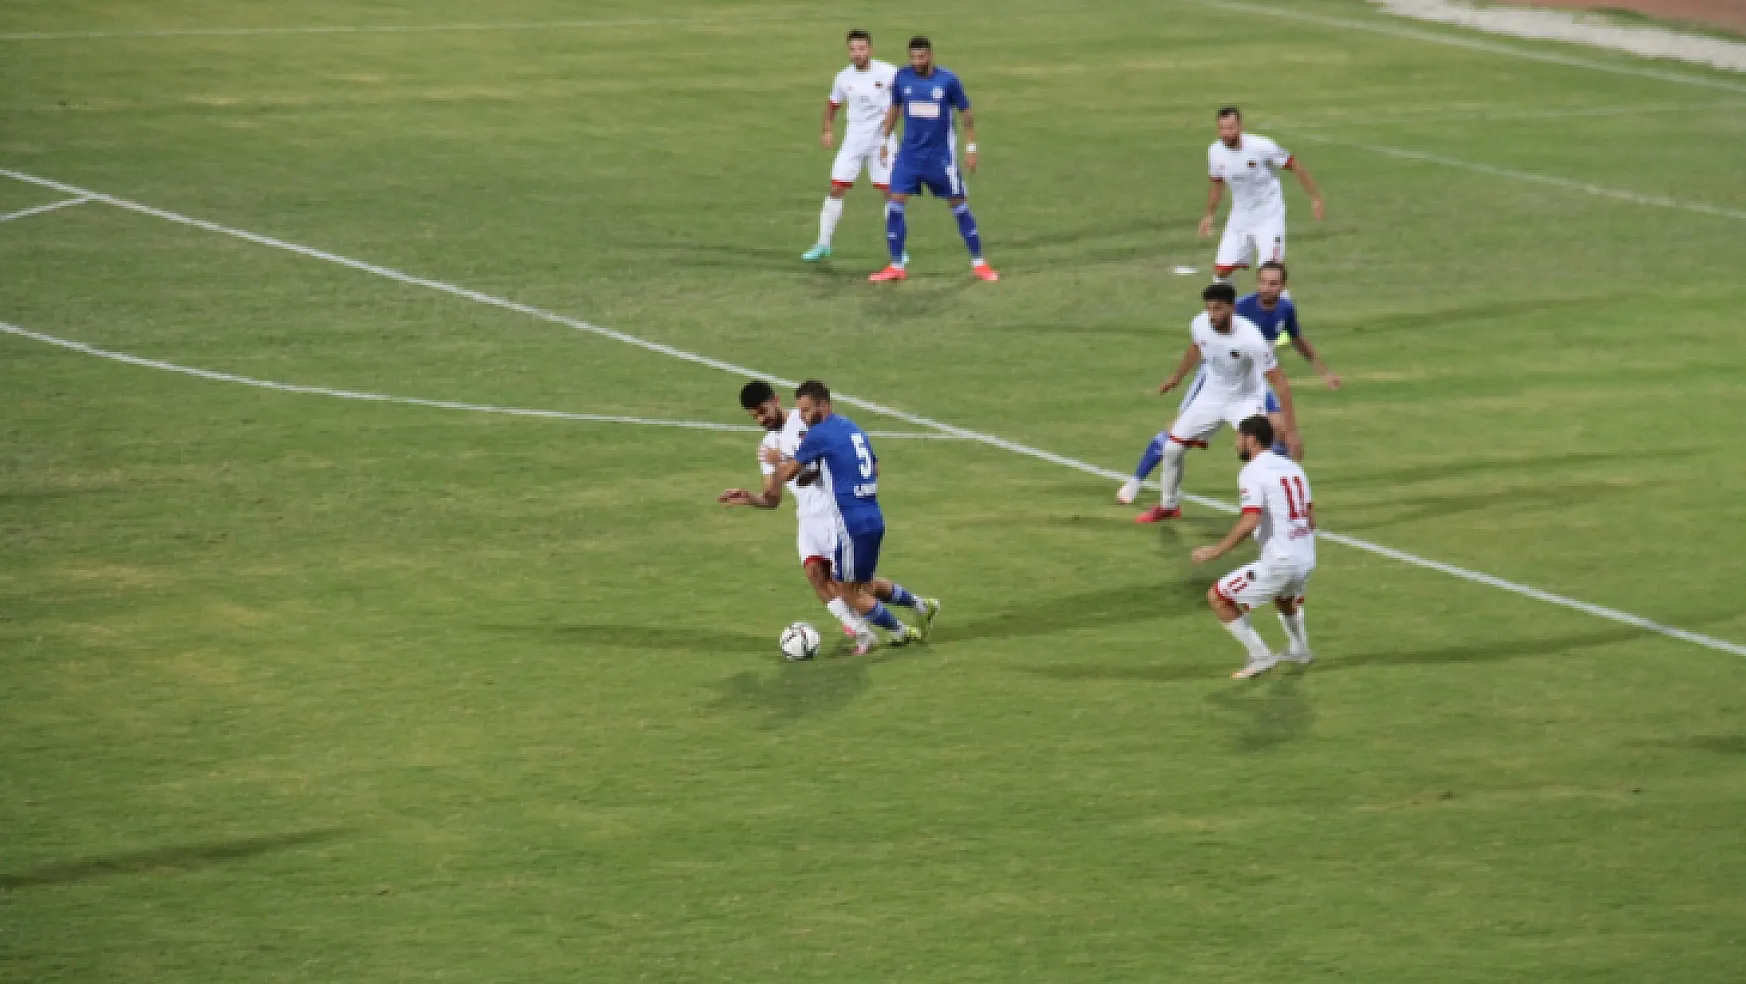 Fethiyespor, Mardin 1969spor'u 2-1 yendi